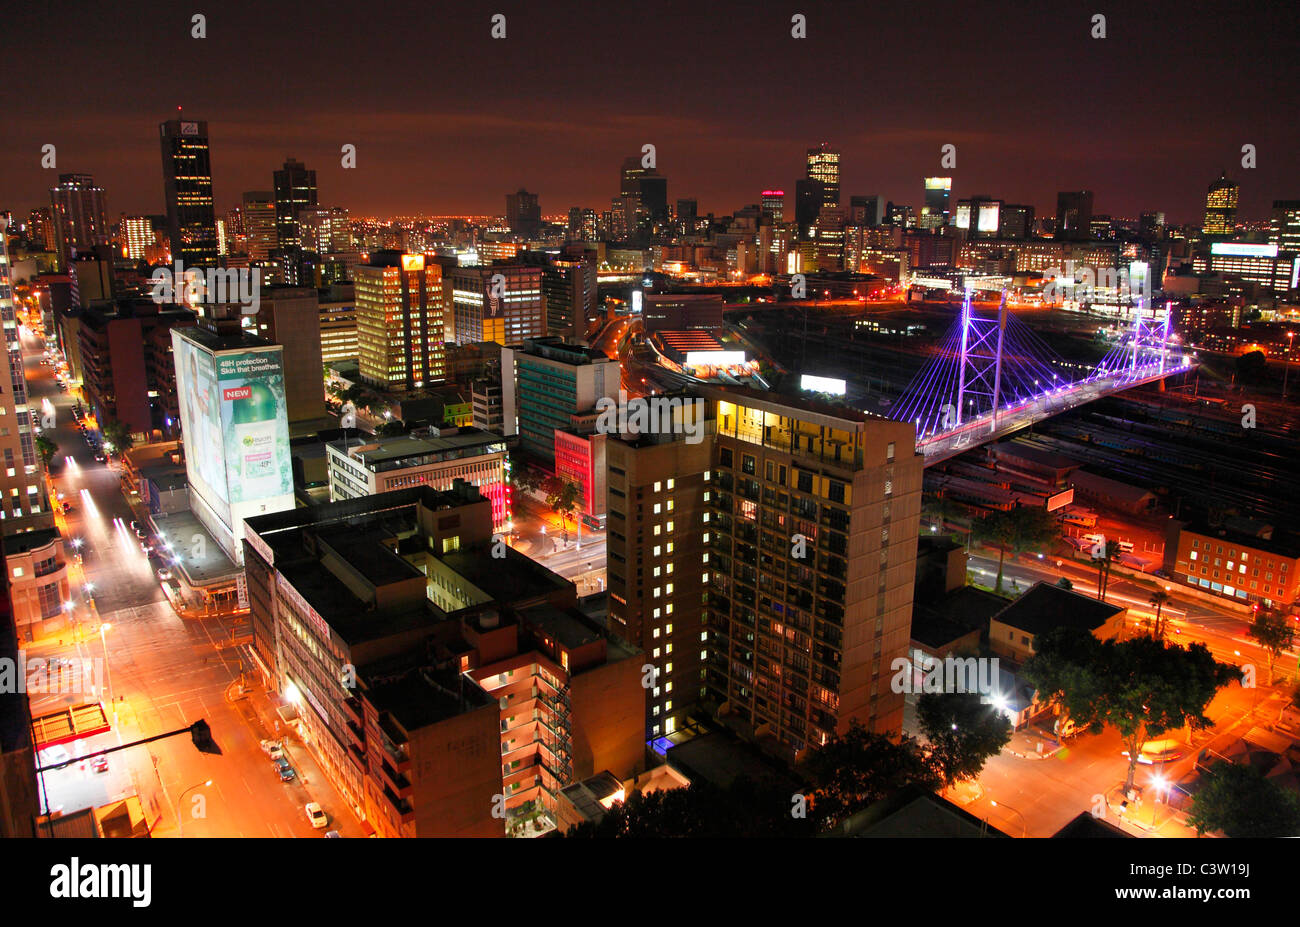 La ville de Johannesburg et Nelson Mandela bridge vu la nuit du haut d'un club à Braamfontein. Johannesburg, Afrique du Sud Banque D'Images